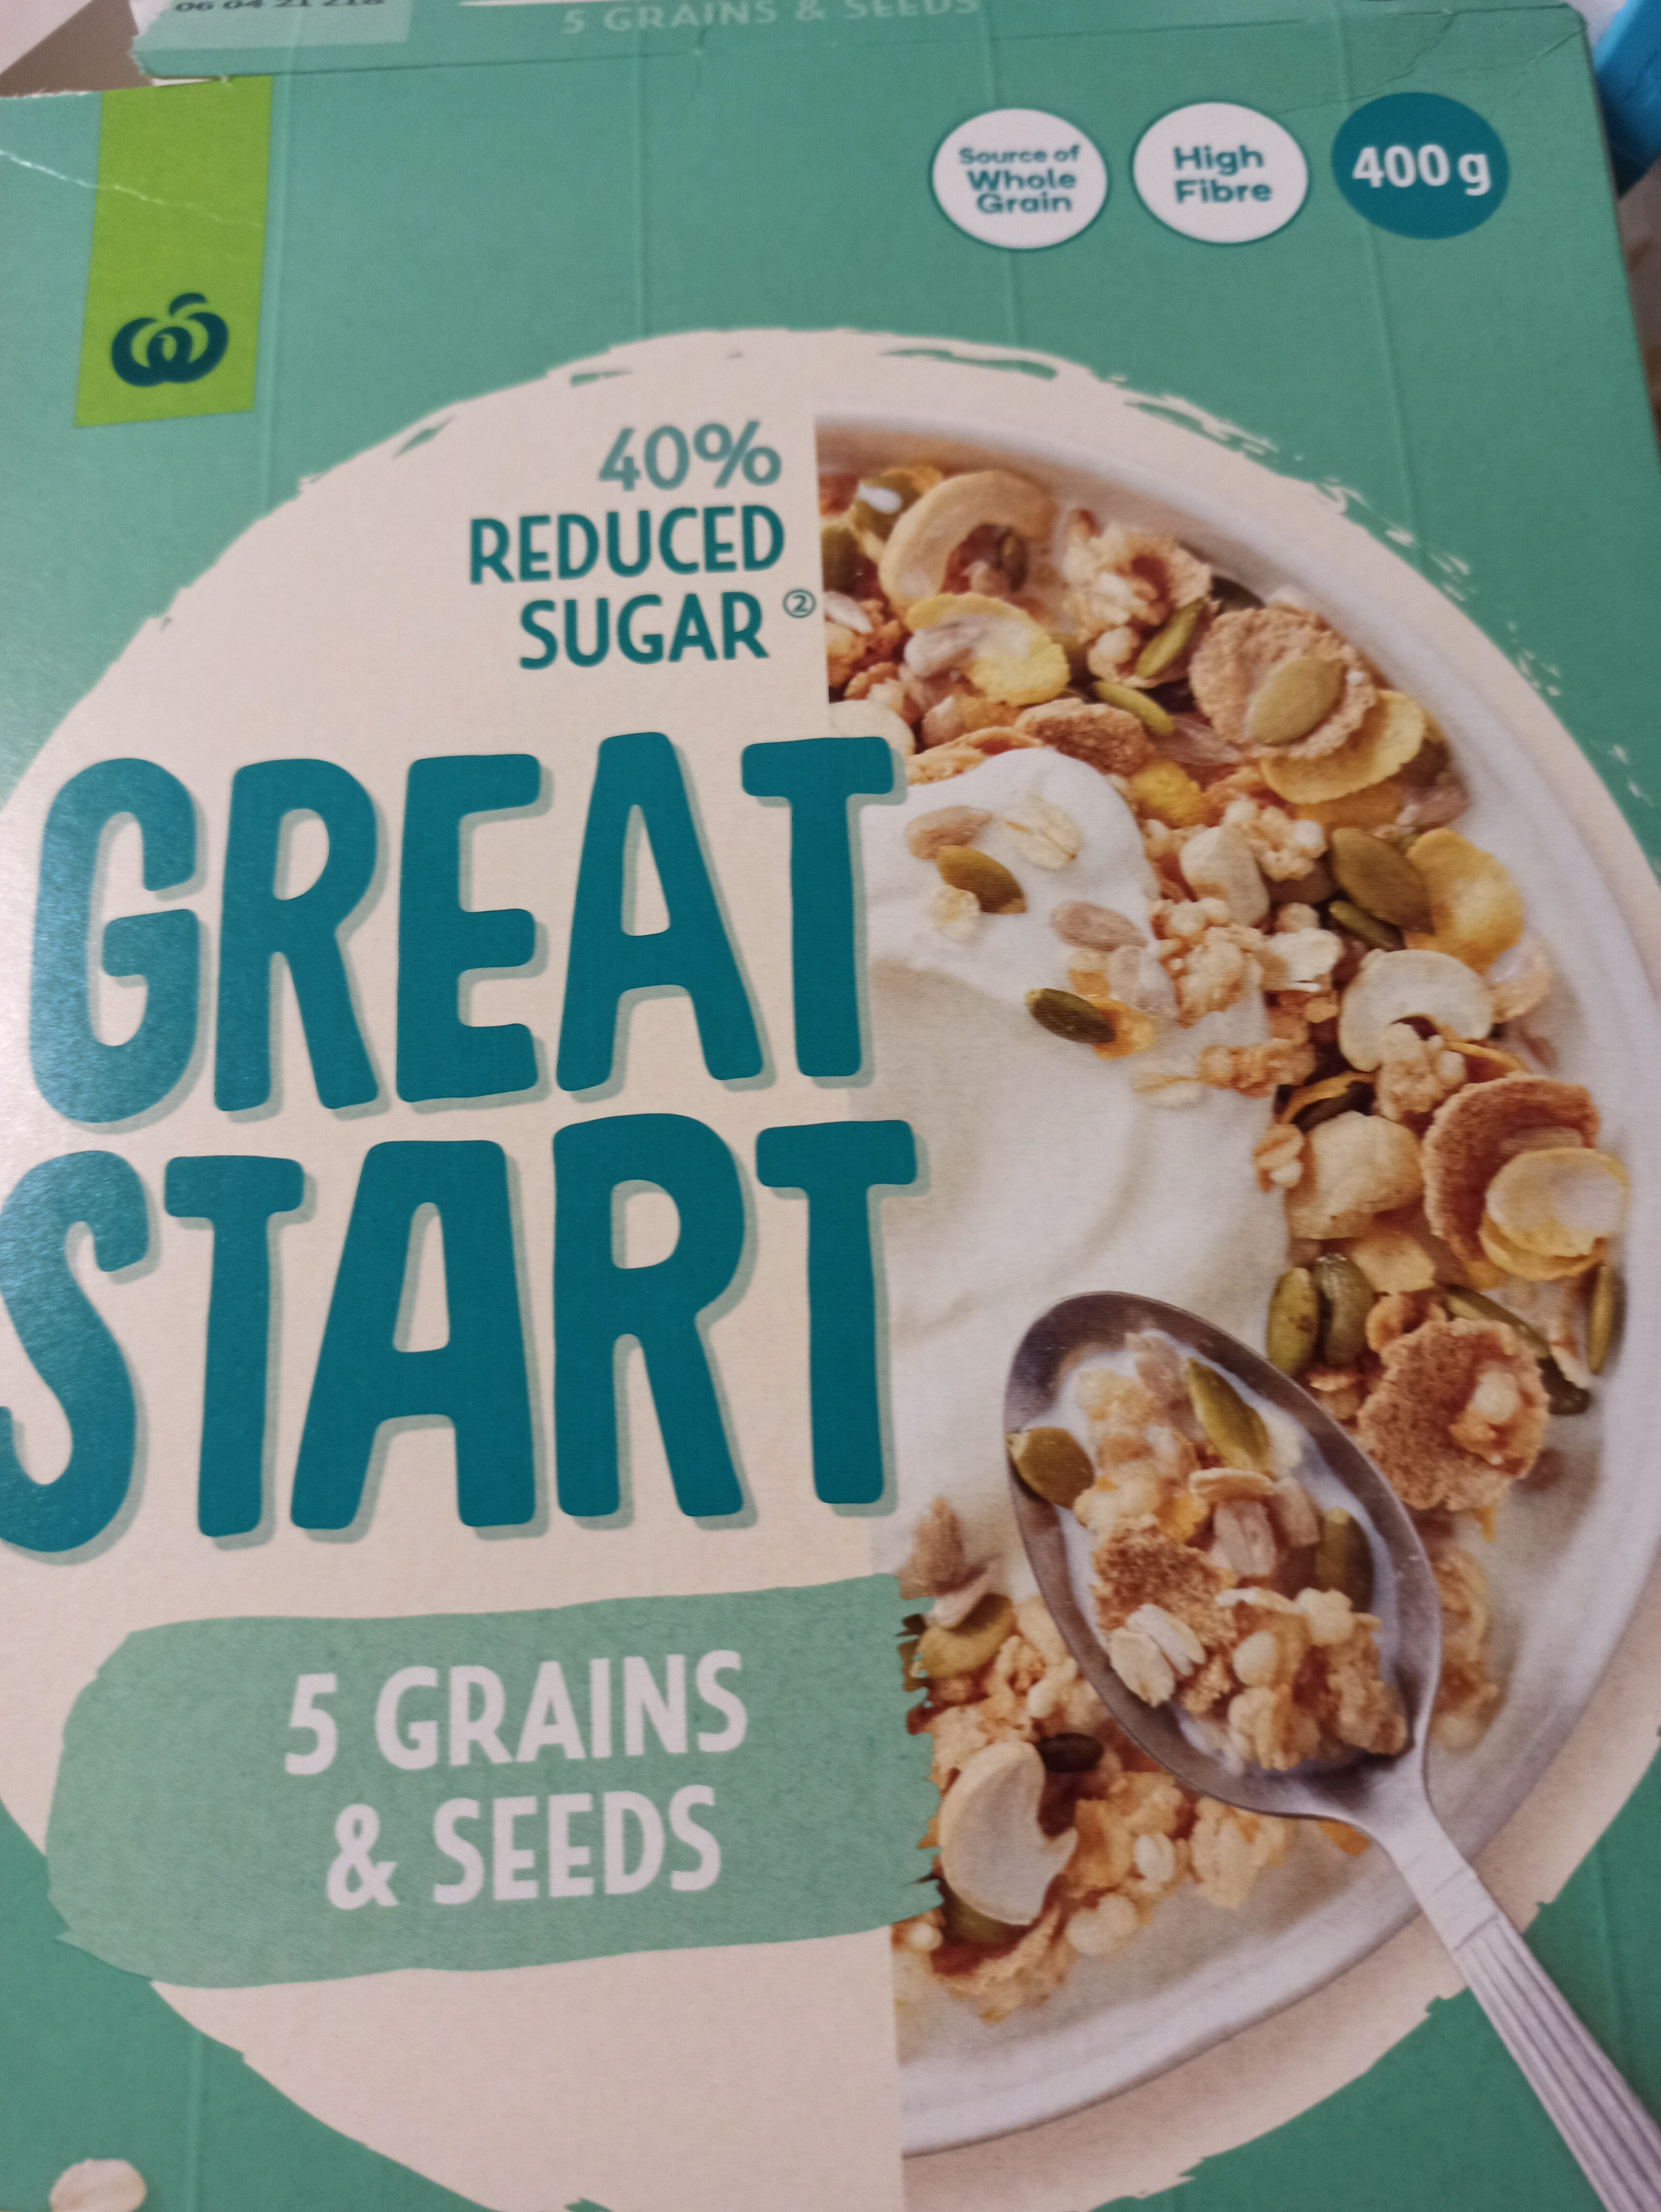 Great Start 5 Grain & Seeds - 产品 - en